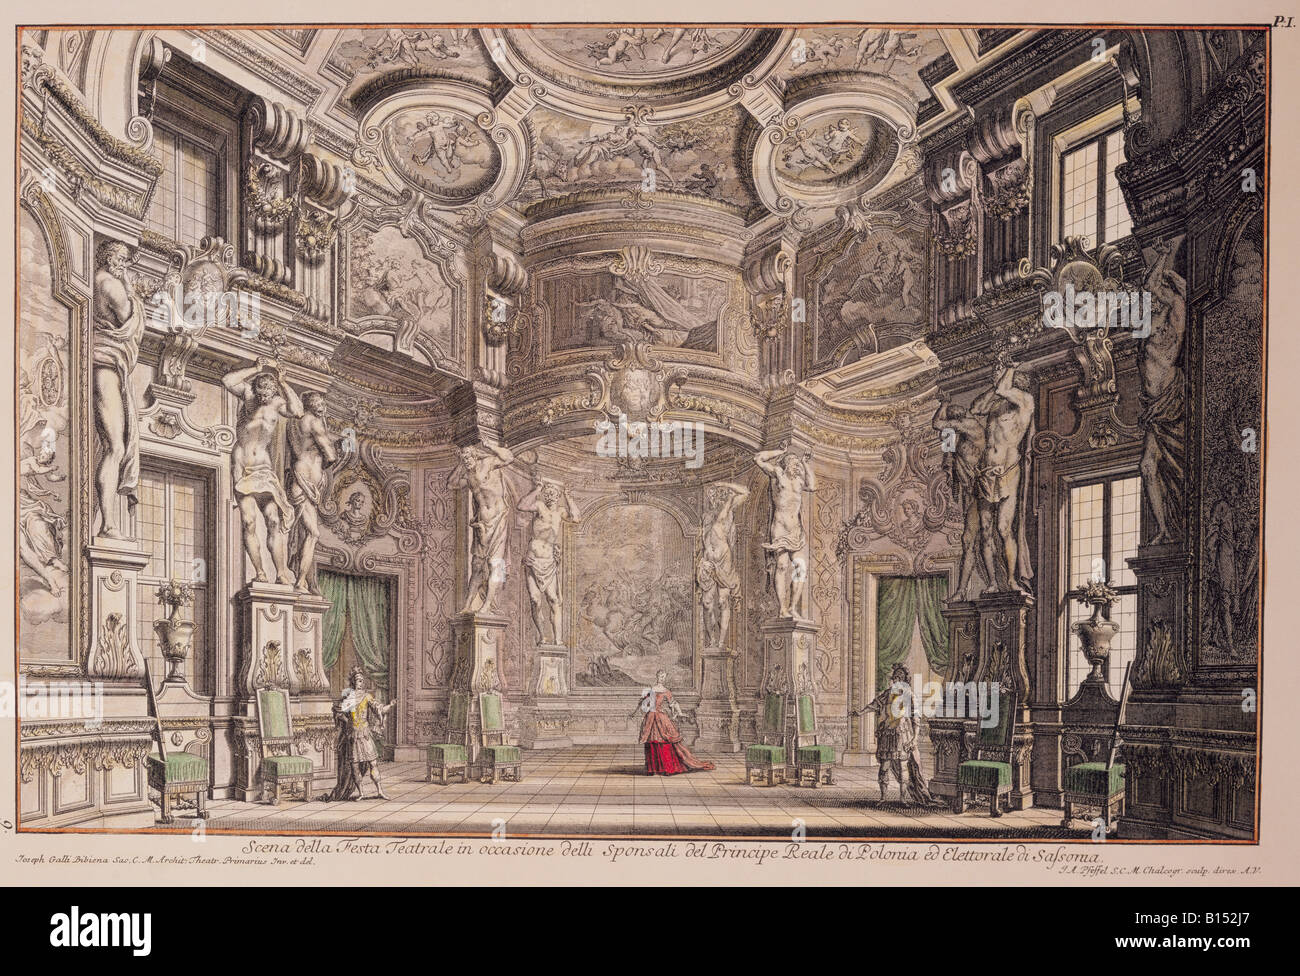 Beaux-arts, da Bibiena, Giuseppe Galli (1696 - 1757), l'étape de conception pour un opéra baroque, gravure sur cuivre, de couleur, de 'Architetture e prospettive', Augsburg, Allemagne, 1740, collection privée, l'artiste n'a pas d'auteur pour être effacé Banque D'Images